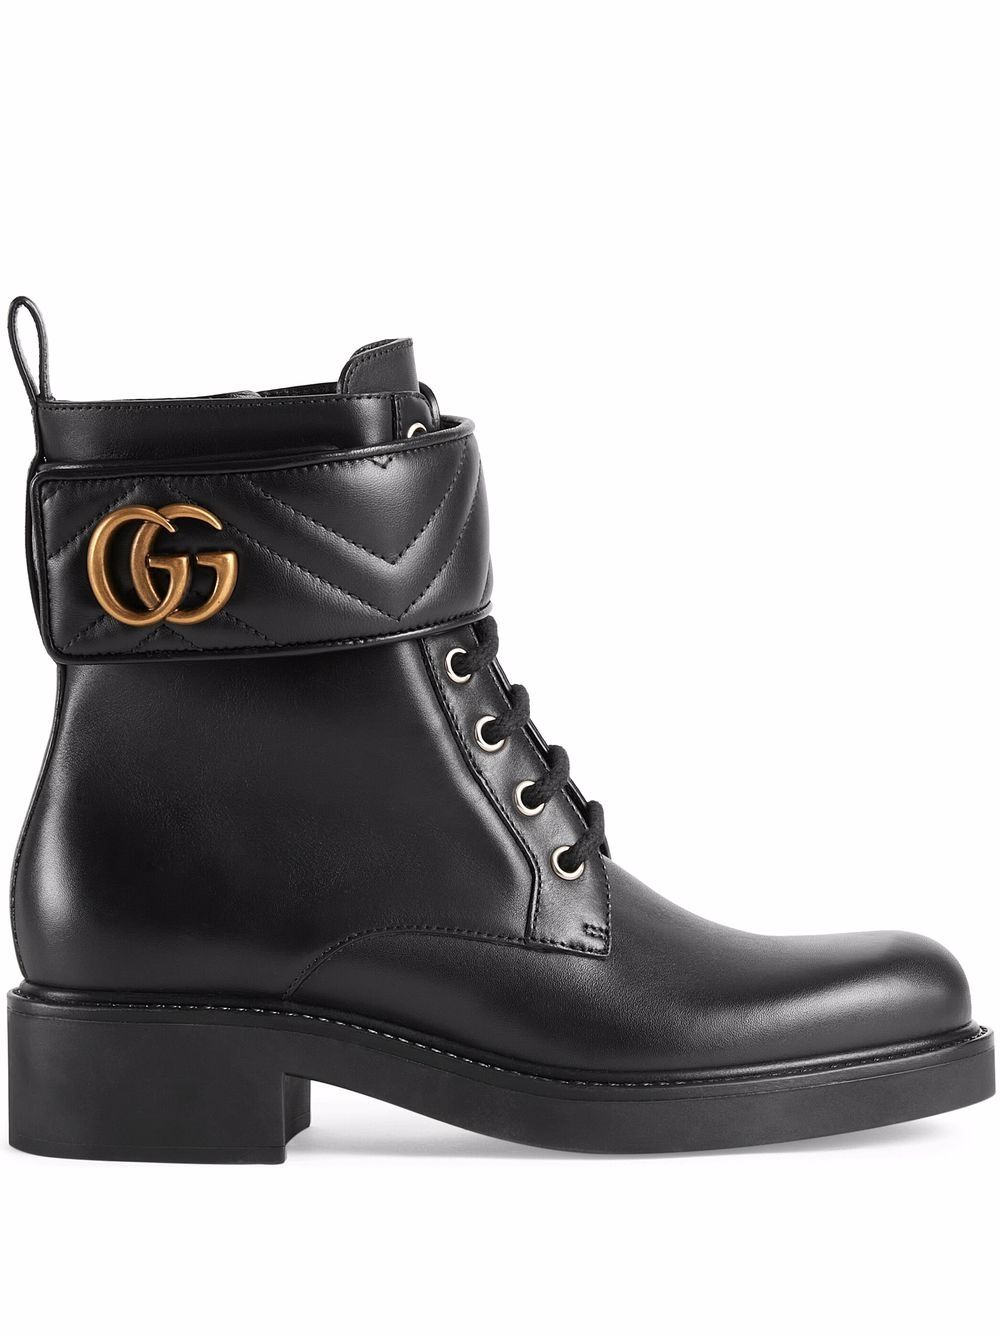 фото Gucci ботинки с логотипом